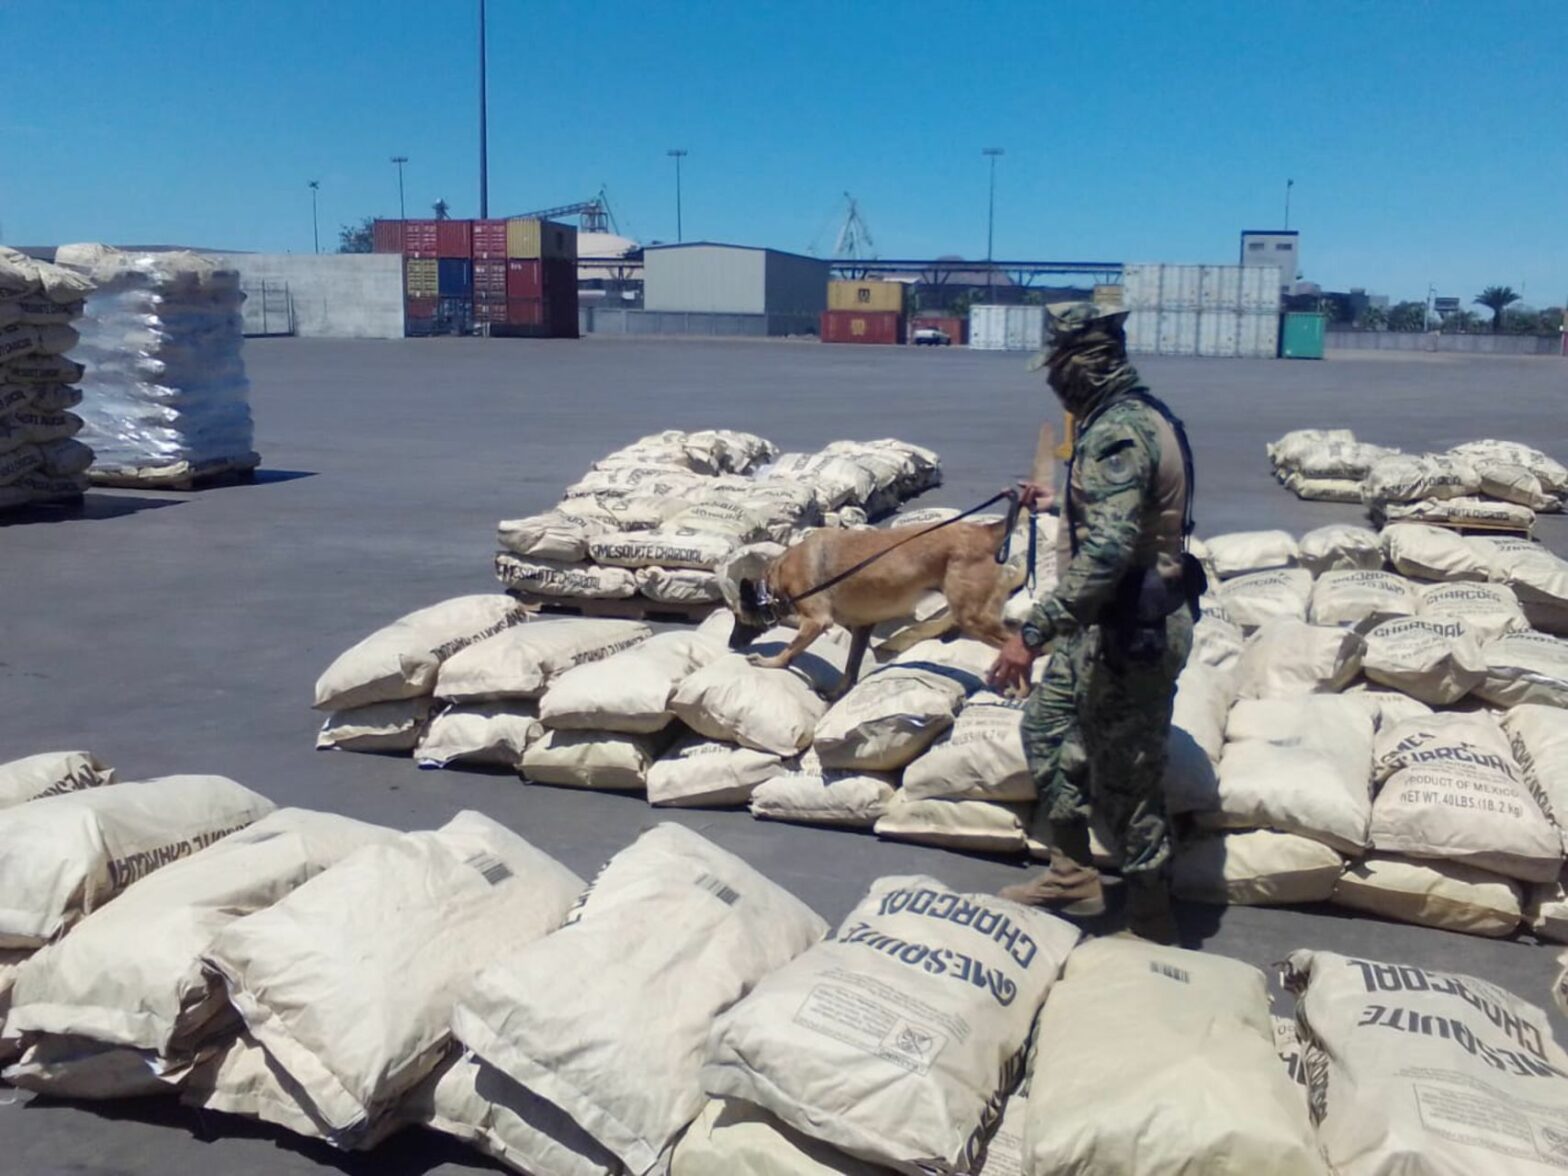 Marina asegura 2 toneladas de metanfetamina en Baja California